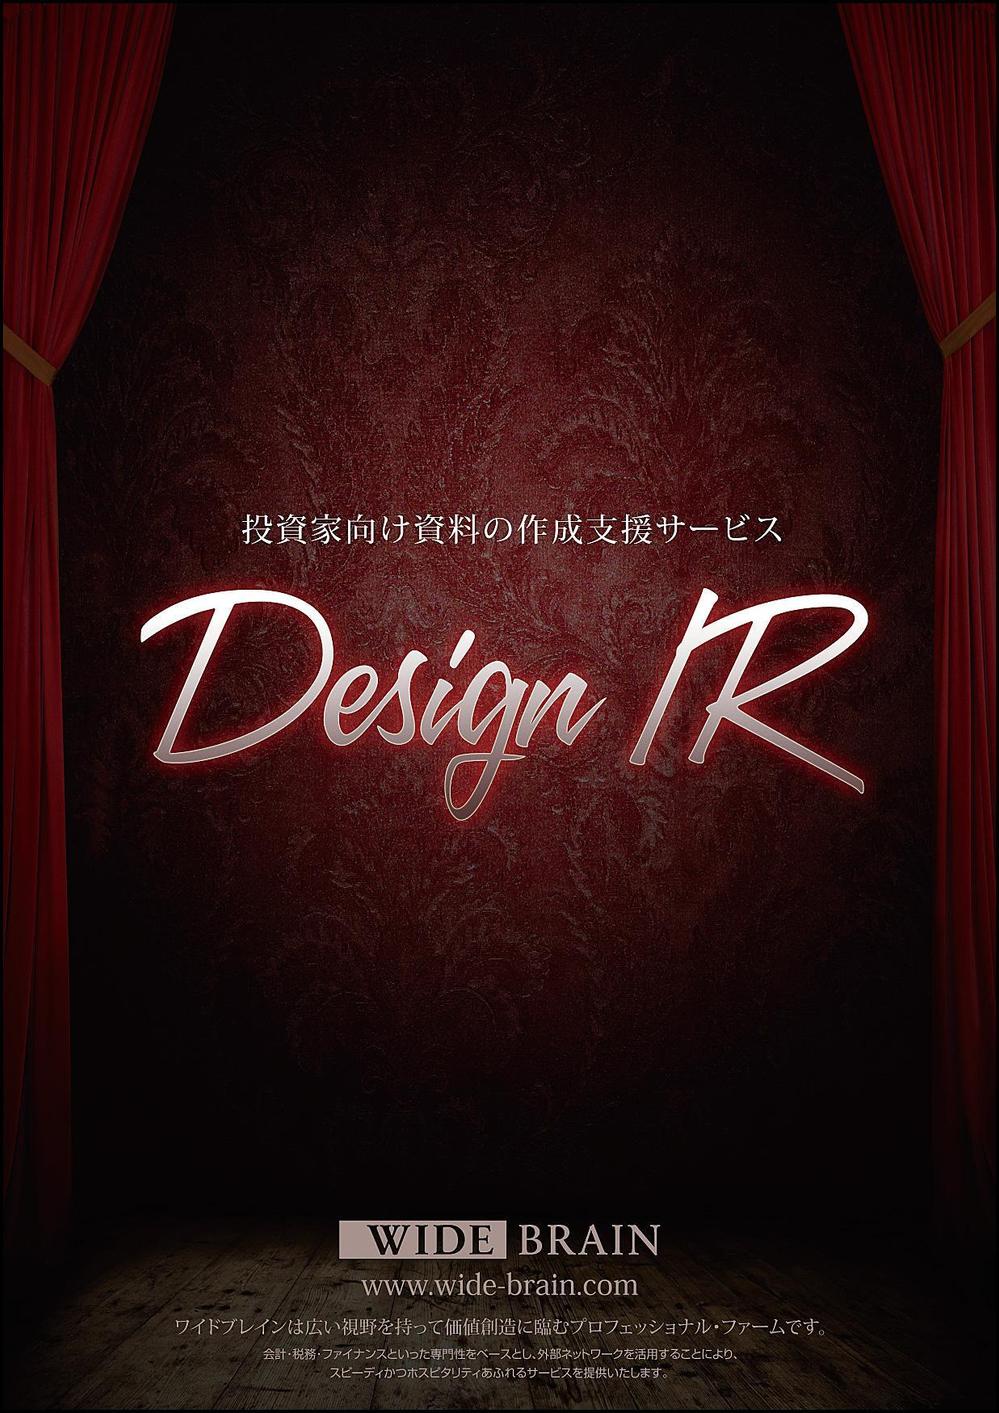 designir_a_1.jpg